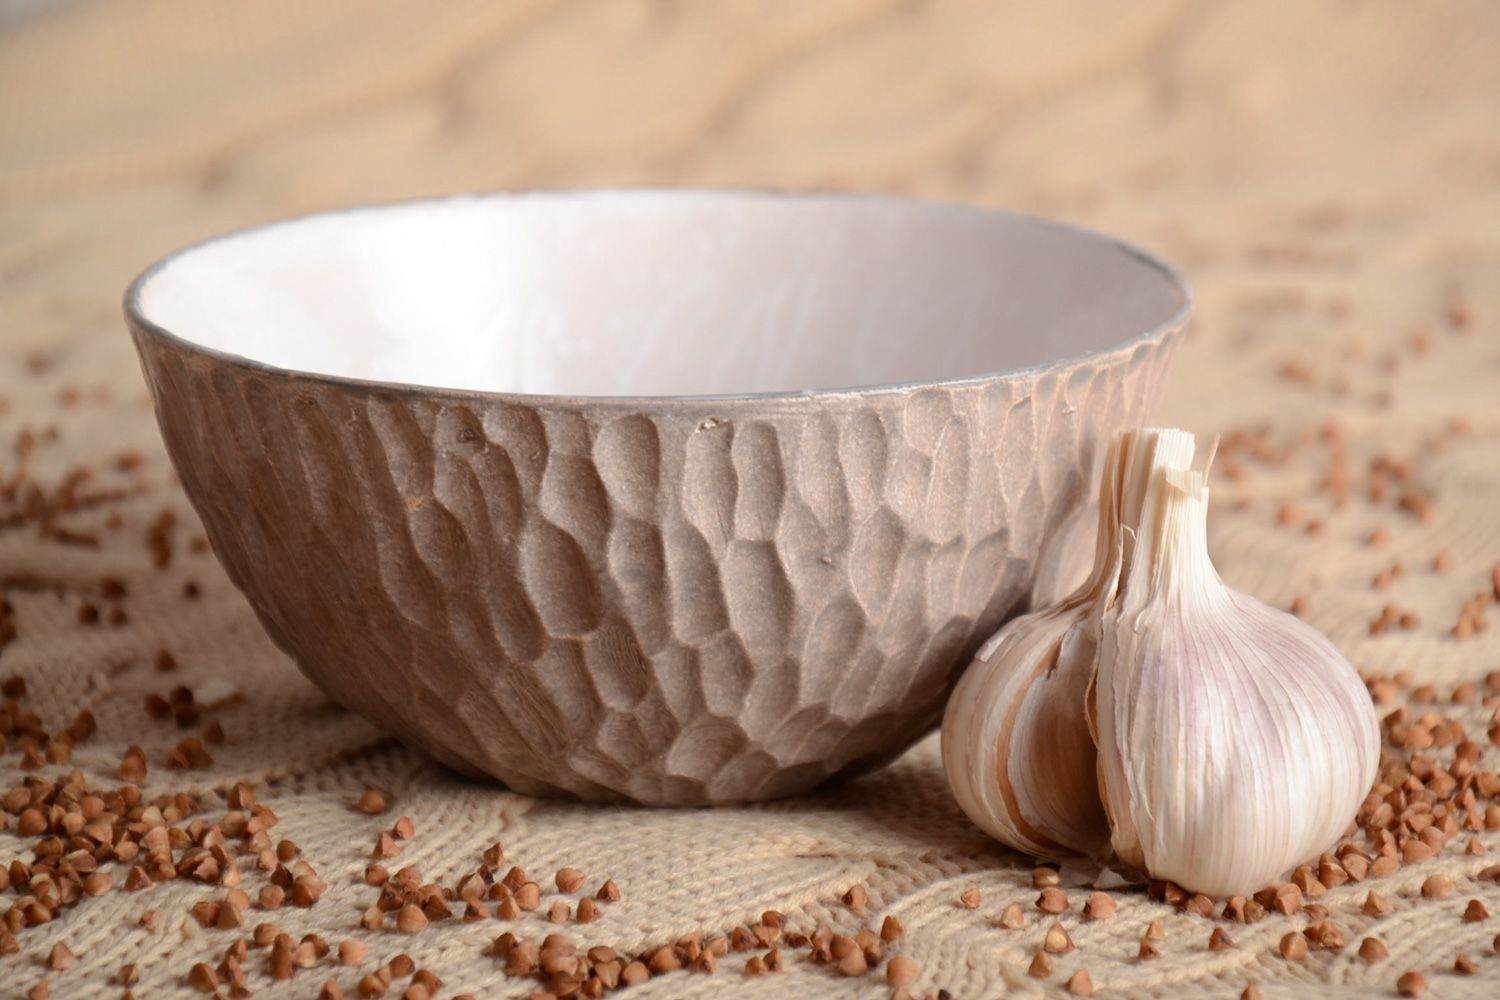 Homemade glazed clay bowl photo 1